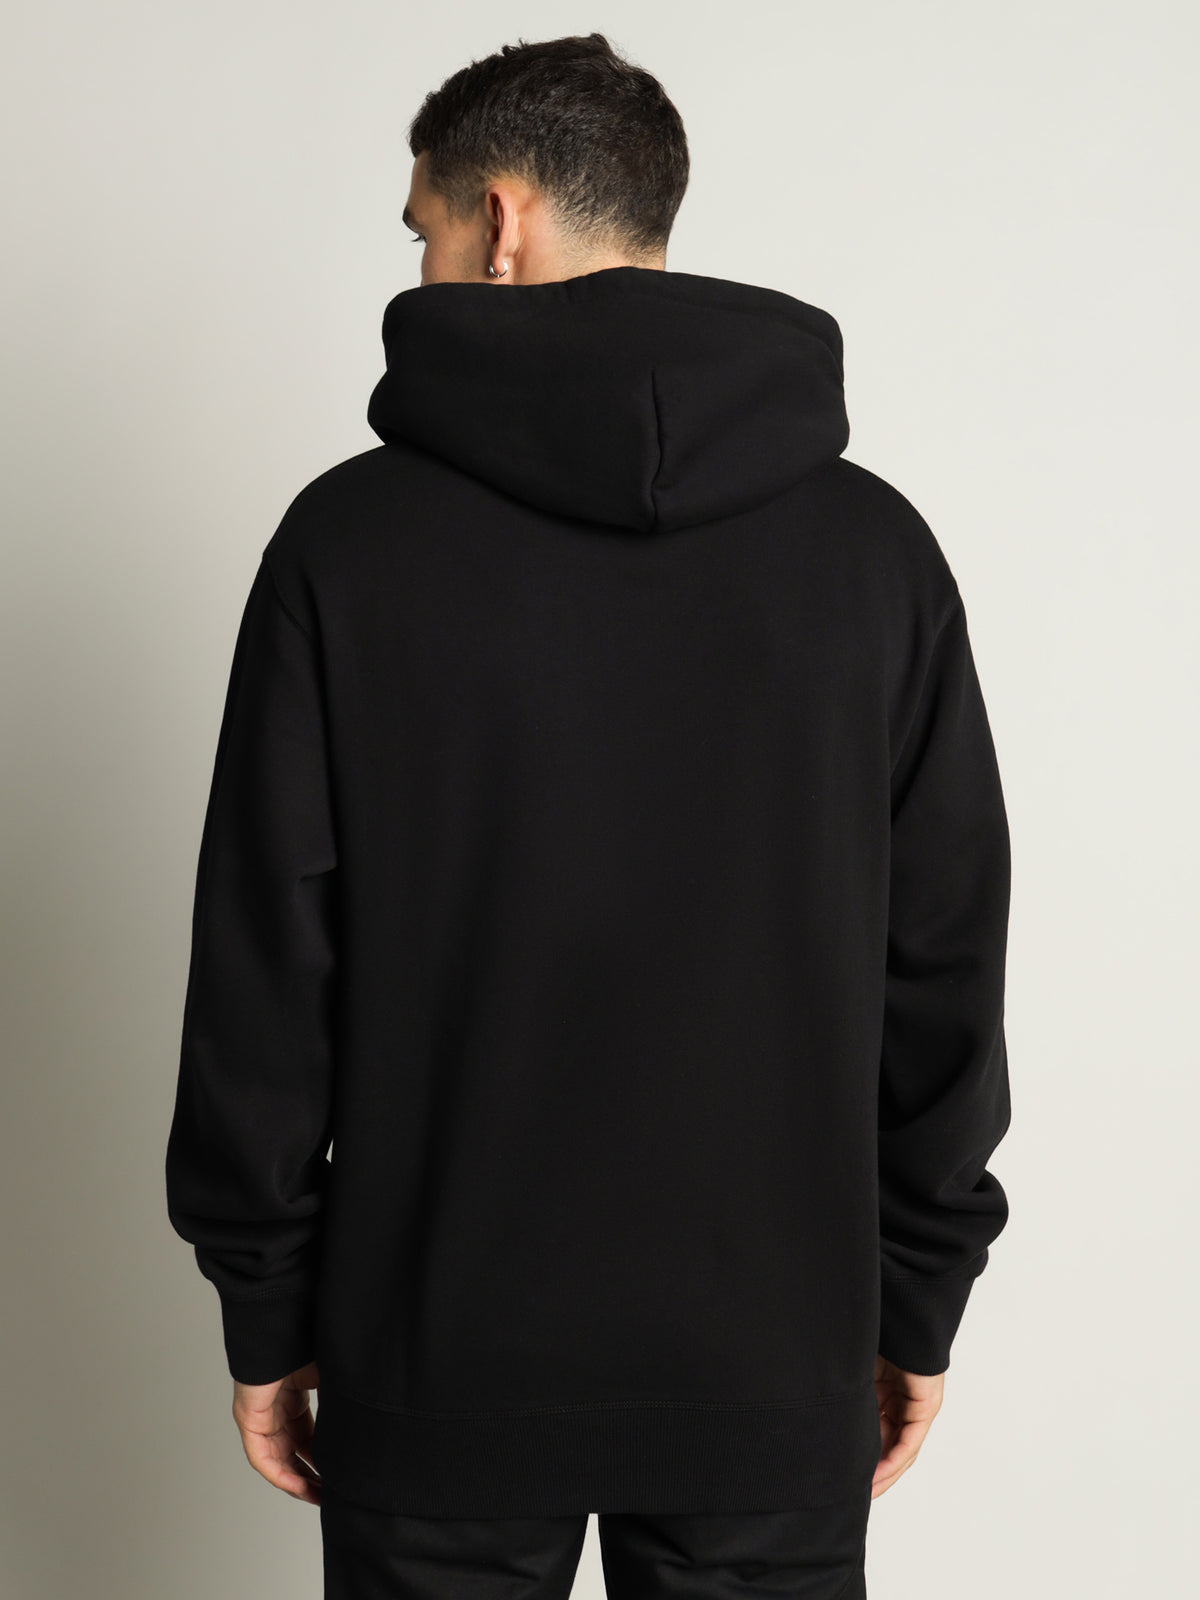 Base H Hooded Sweatshirt in Black